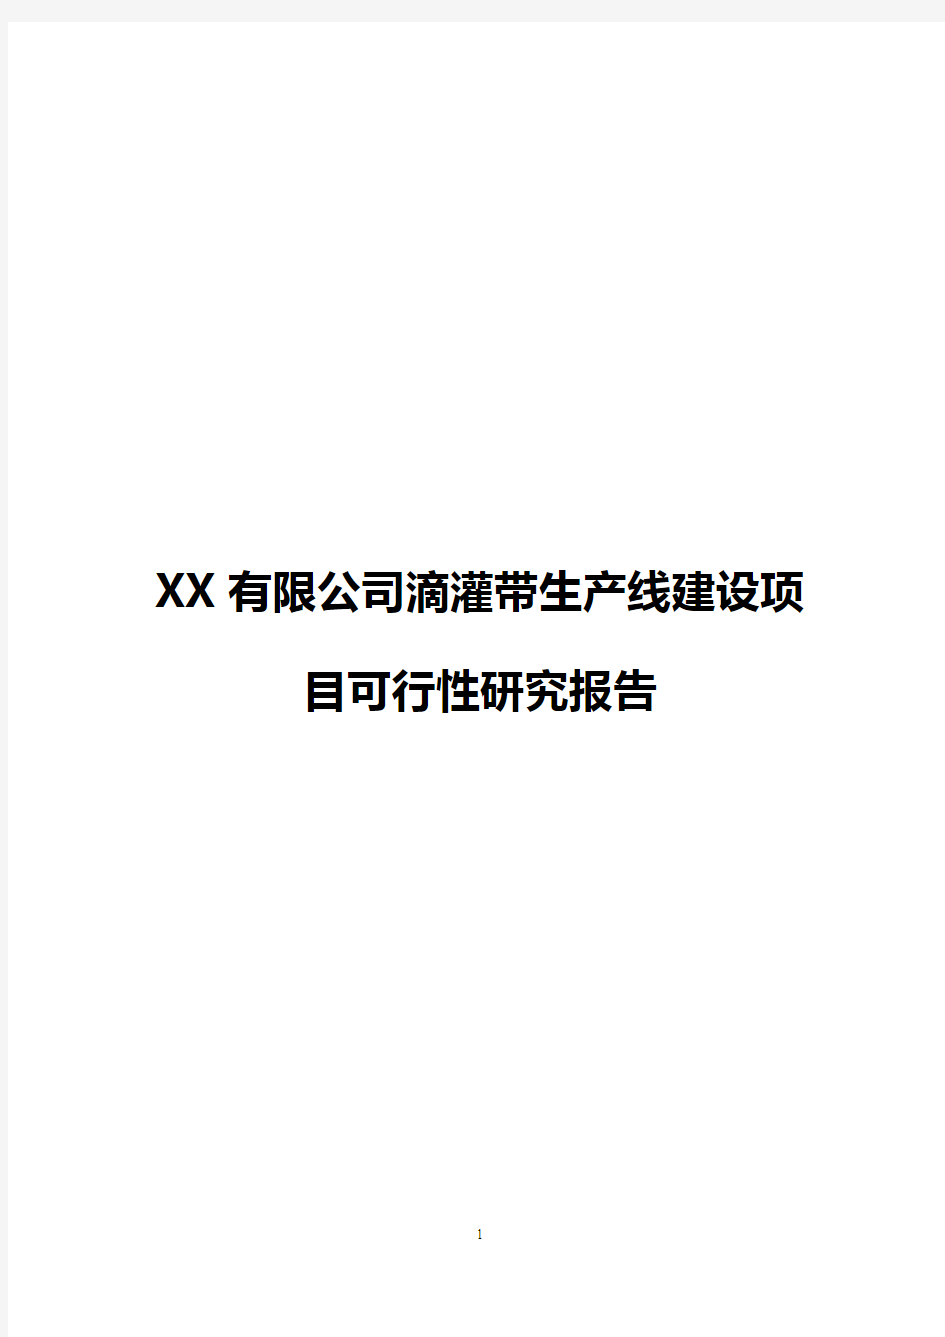 【新选申报版】XX有限公司滴灌带生产线建设项目可行性研究报告